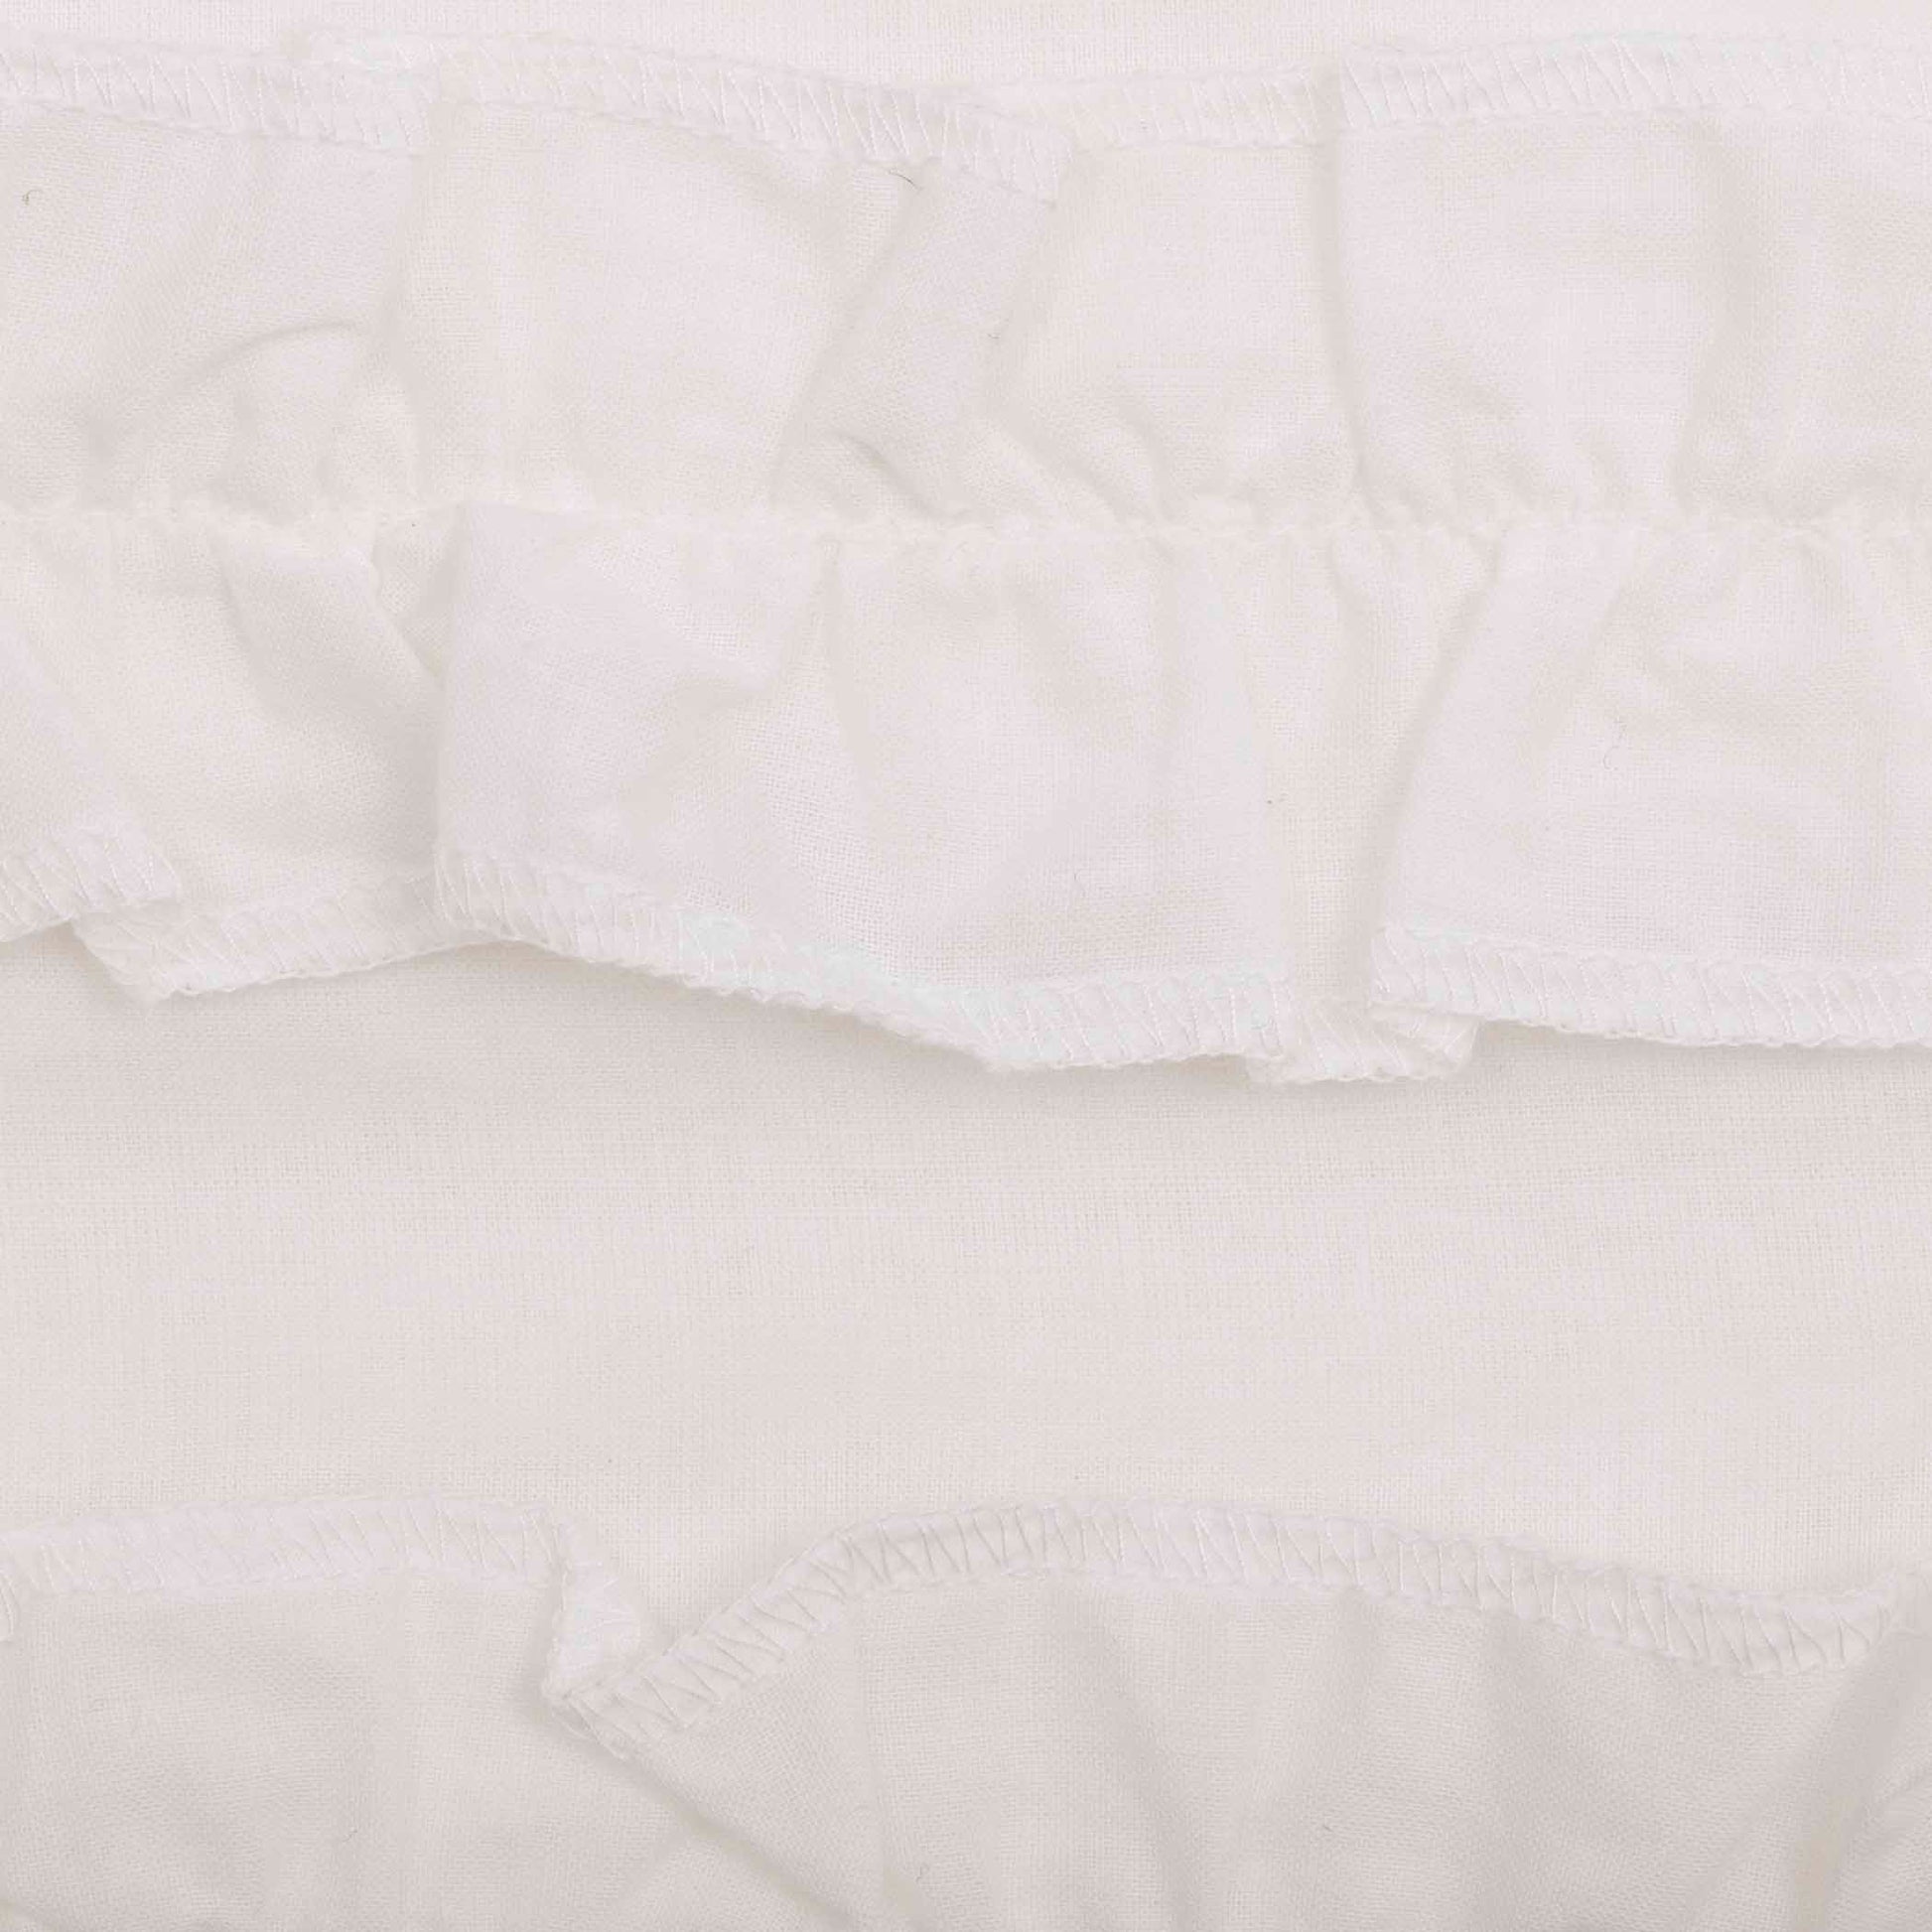 51401-White-Ruffled-Sheer-Petticoat-Prairie-Short-Panel-Set-of-2-63x36x18-image-8